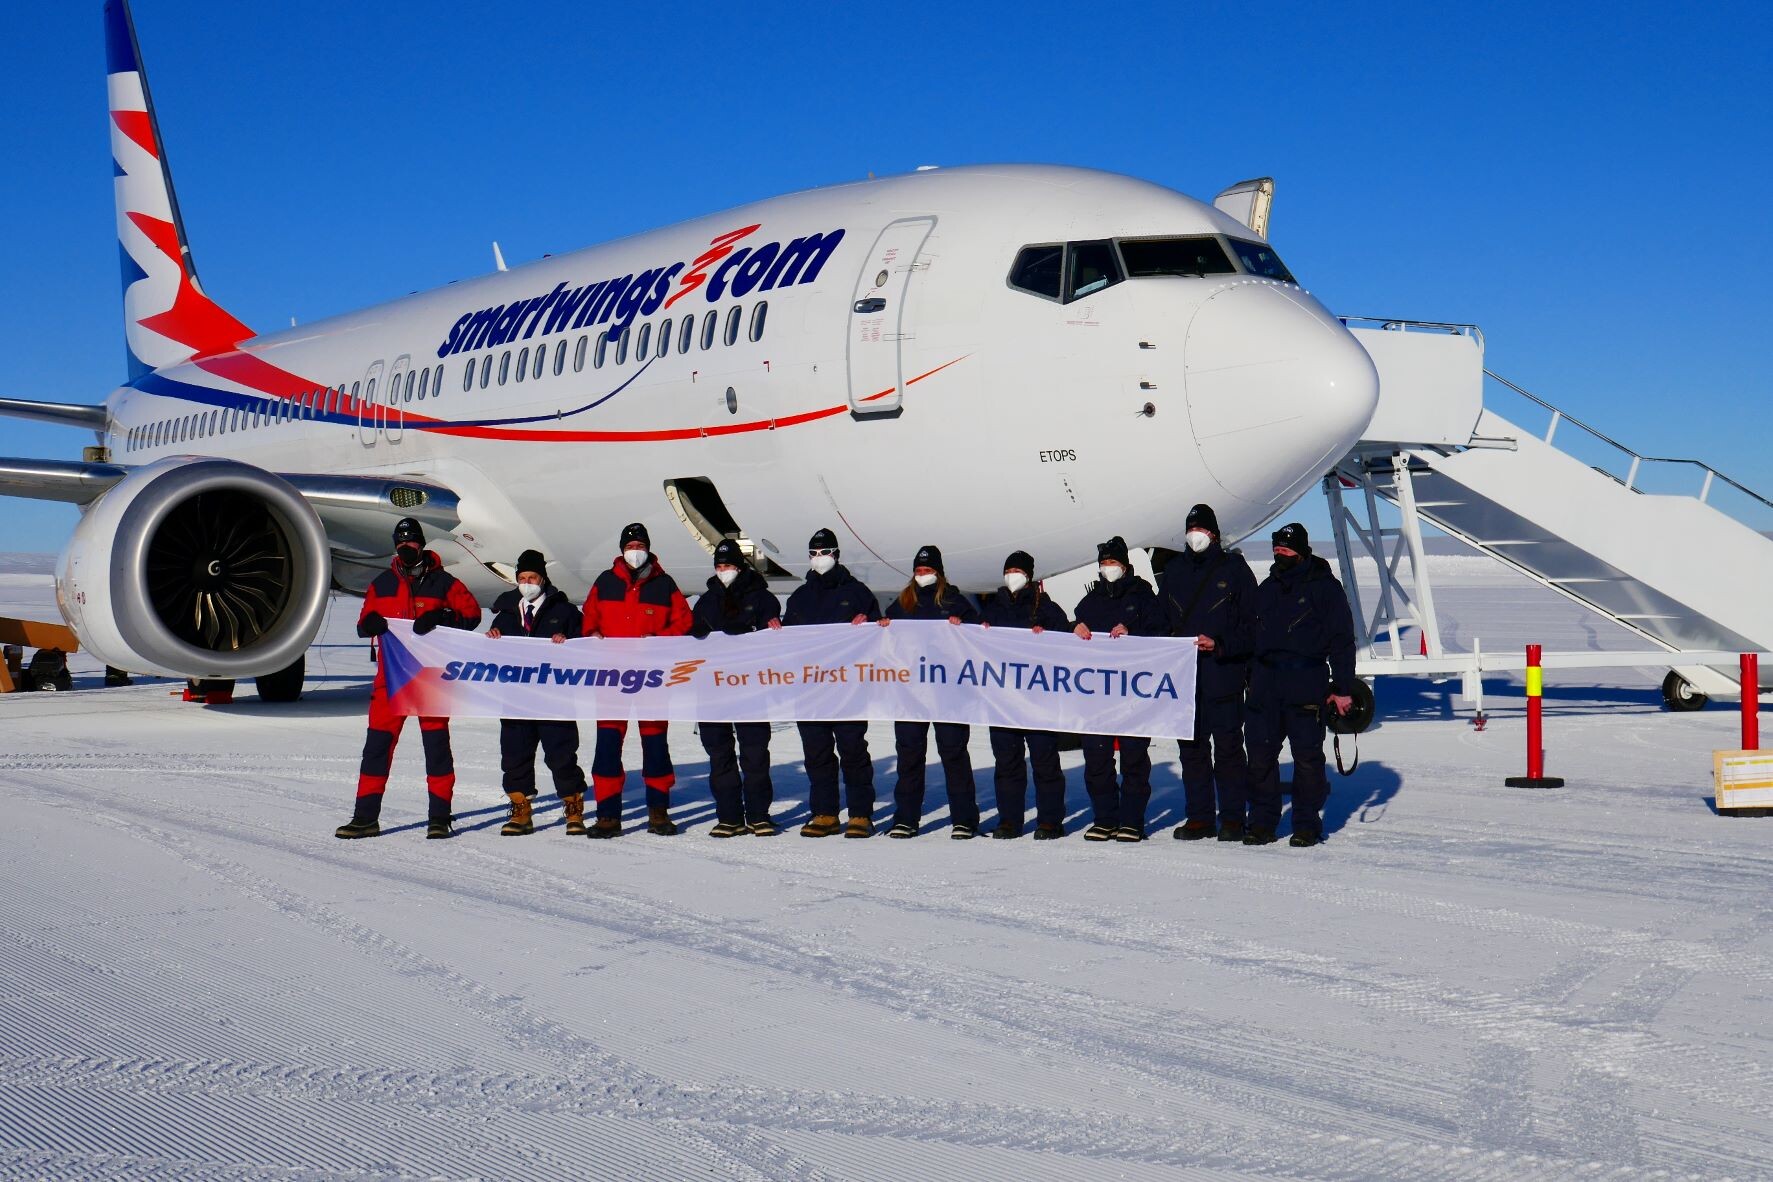 Příští zastávka Antarktida. Smartwings tam jako vůbec první přistály s Boeingem 737 MAX